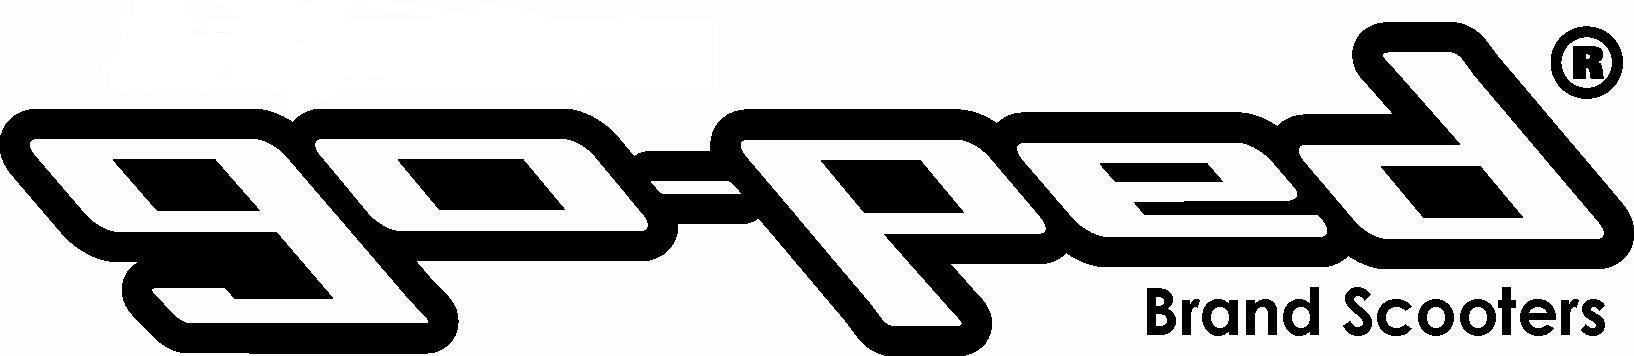 goped-logo-official-v1.jpg